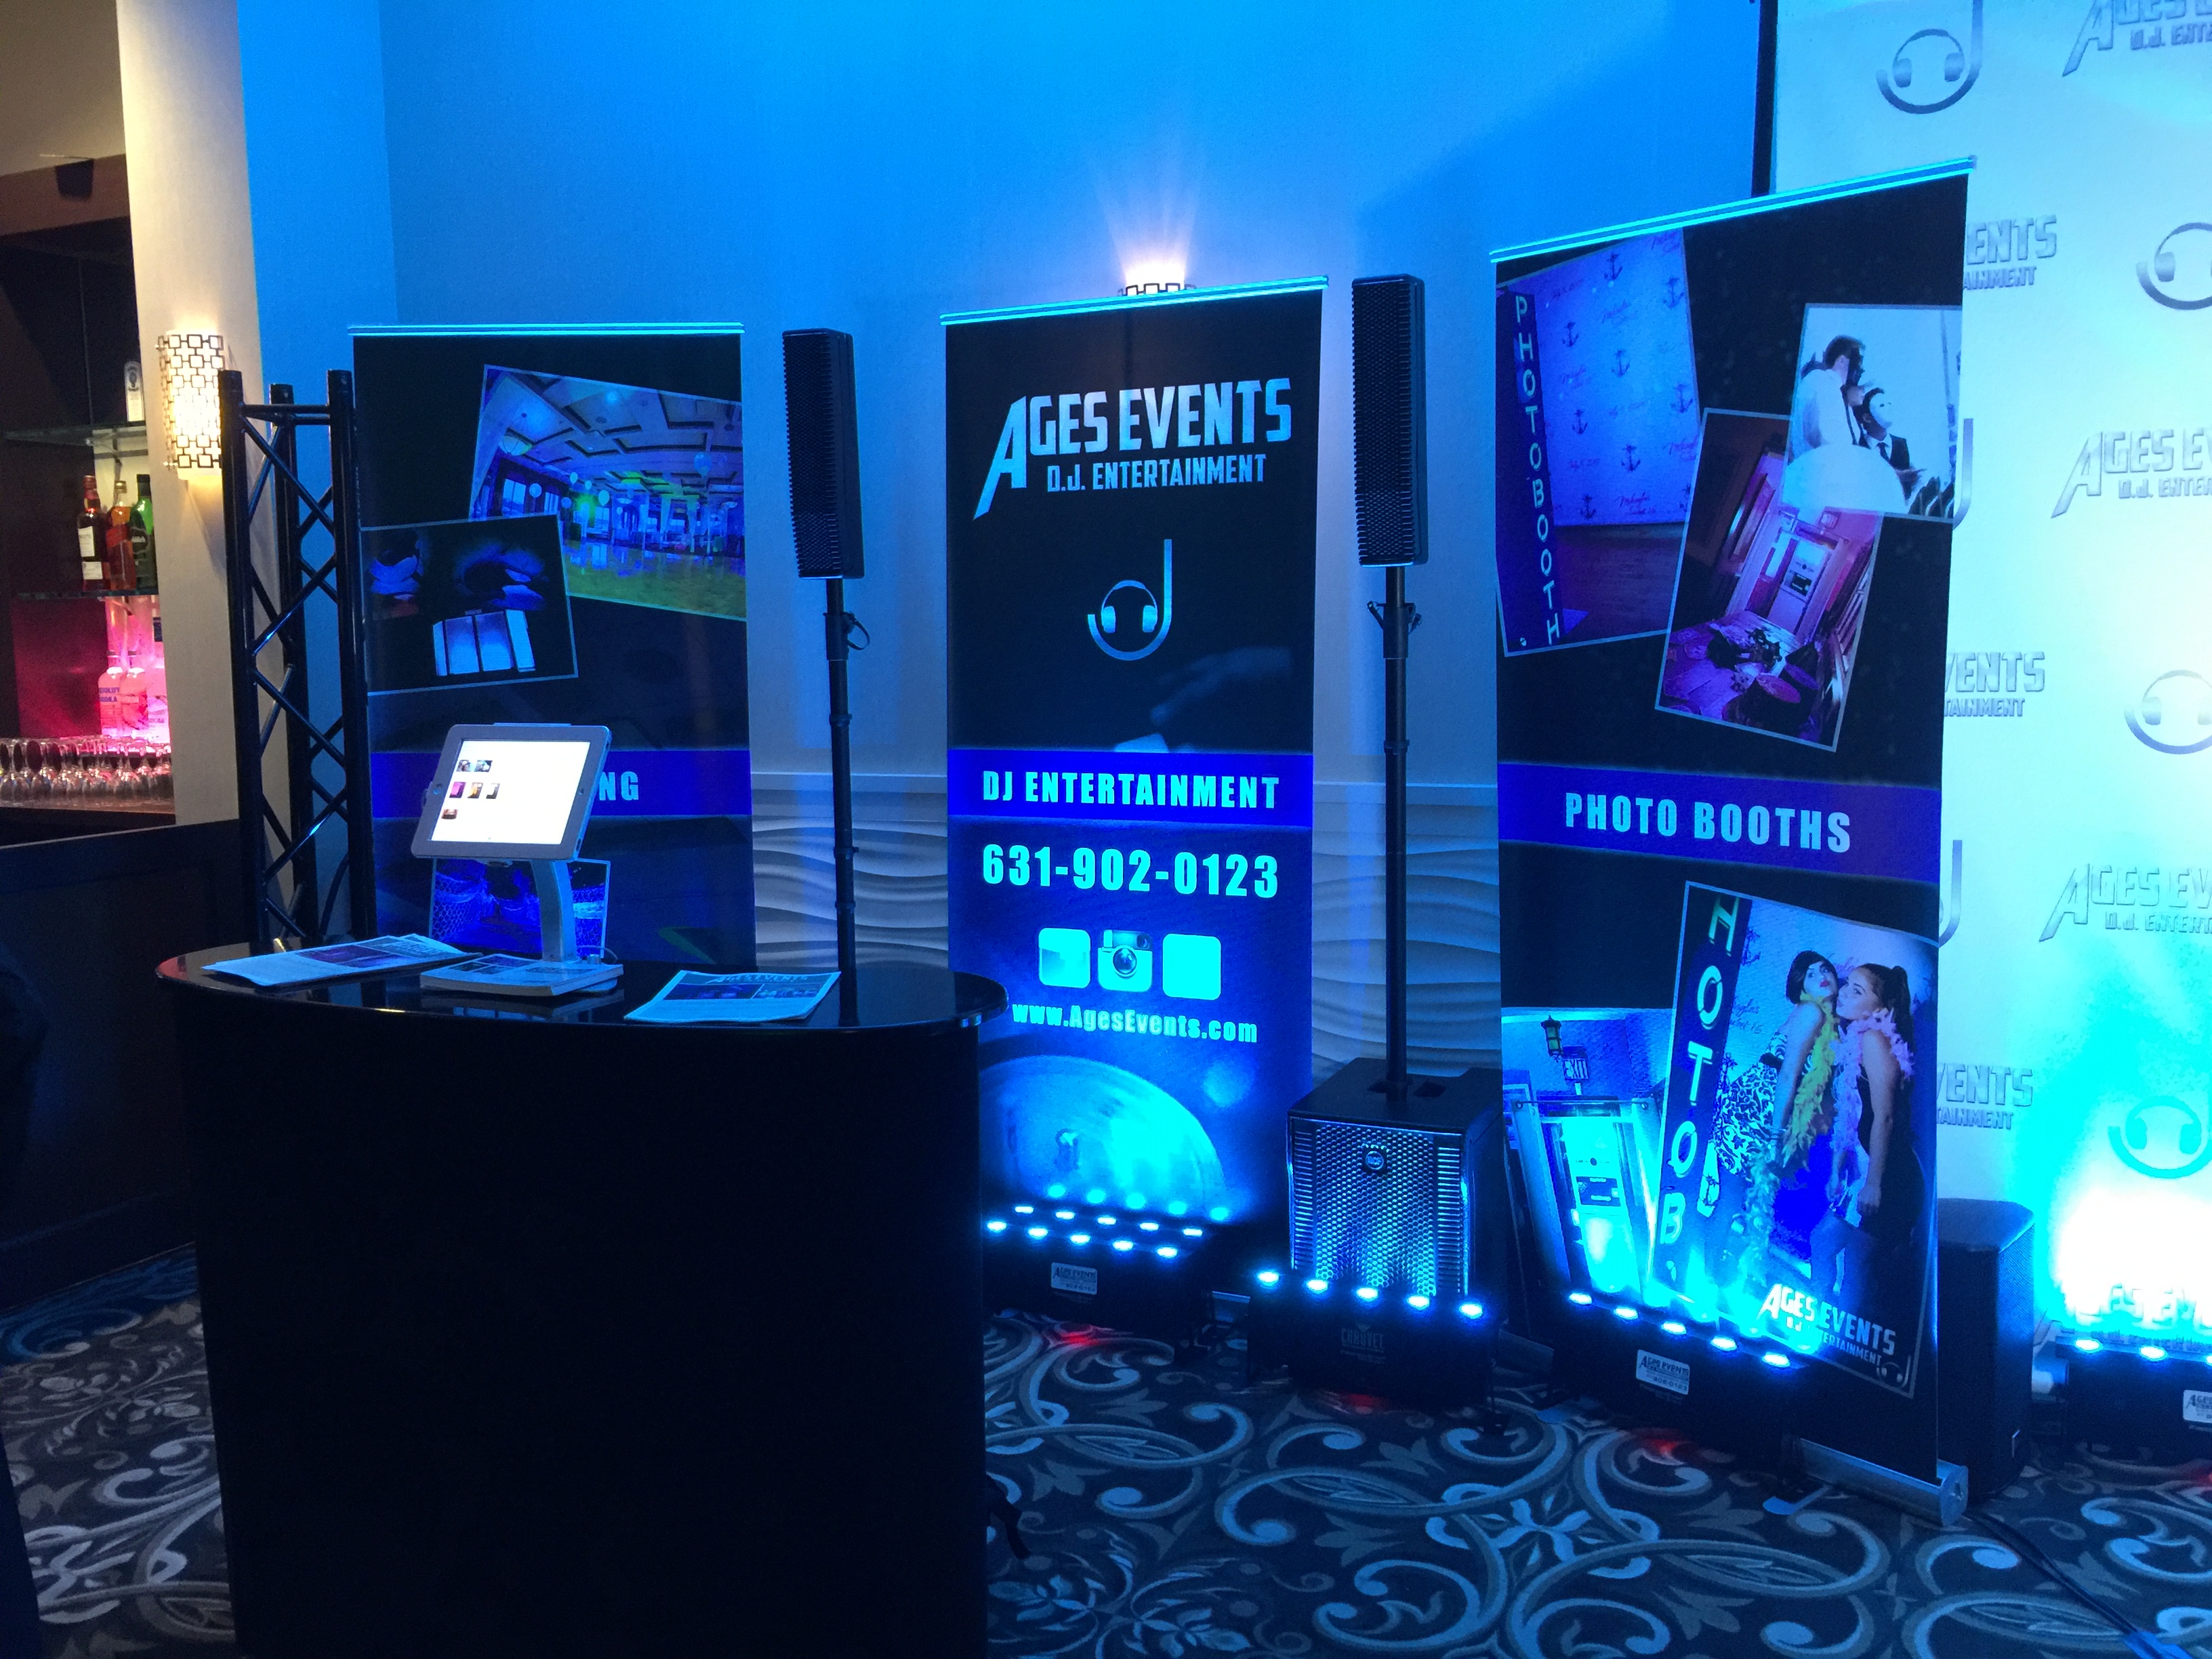 Retractable Banner Designs - AGES Events D.J Entertainment 2015.